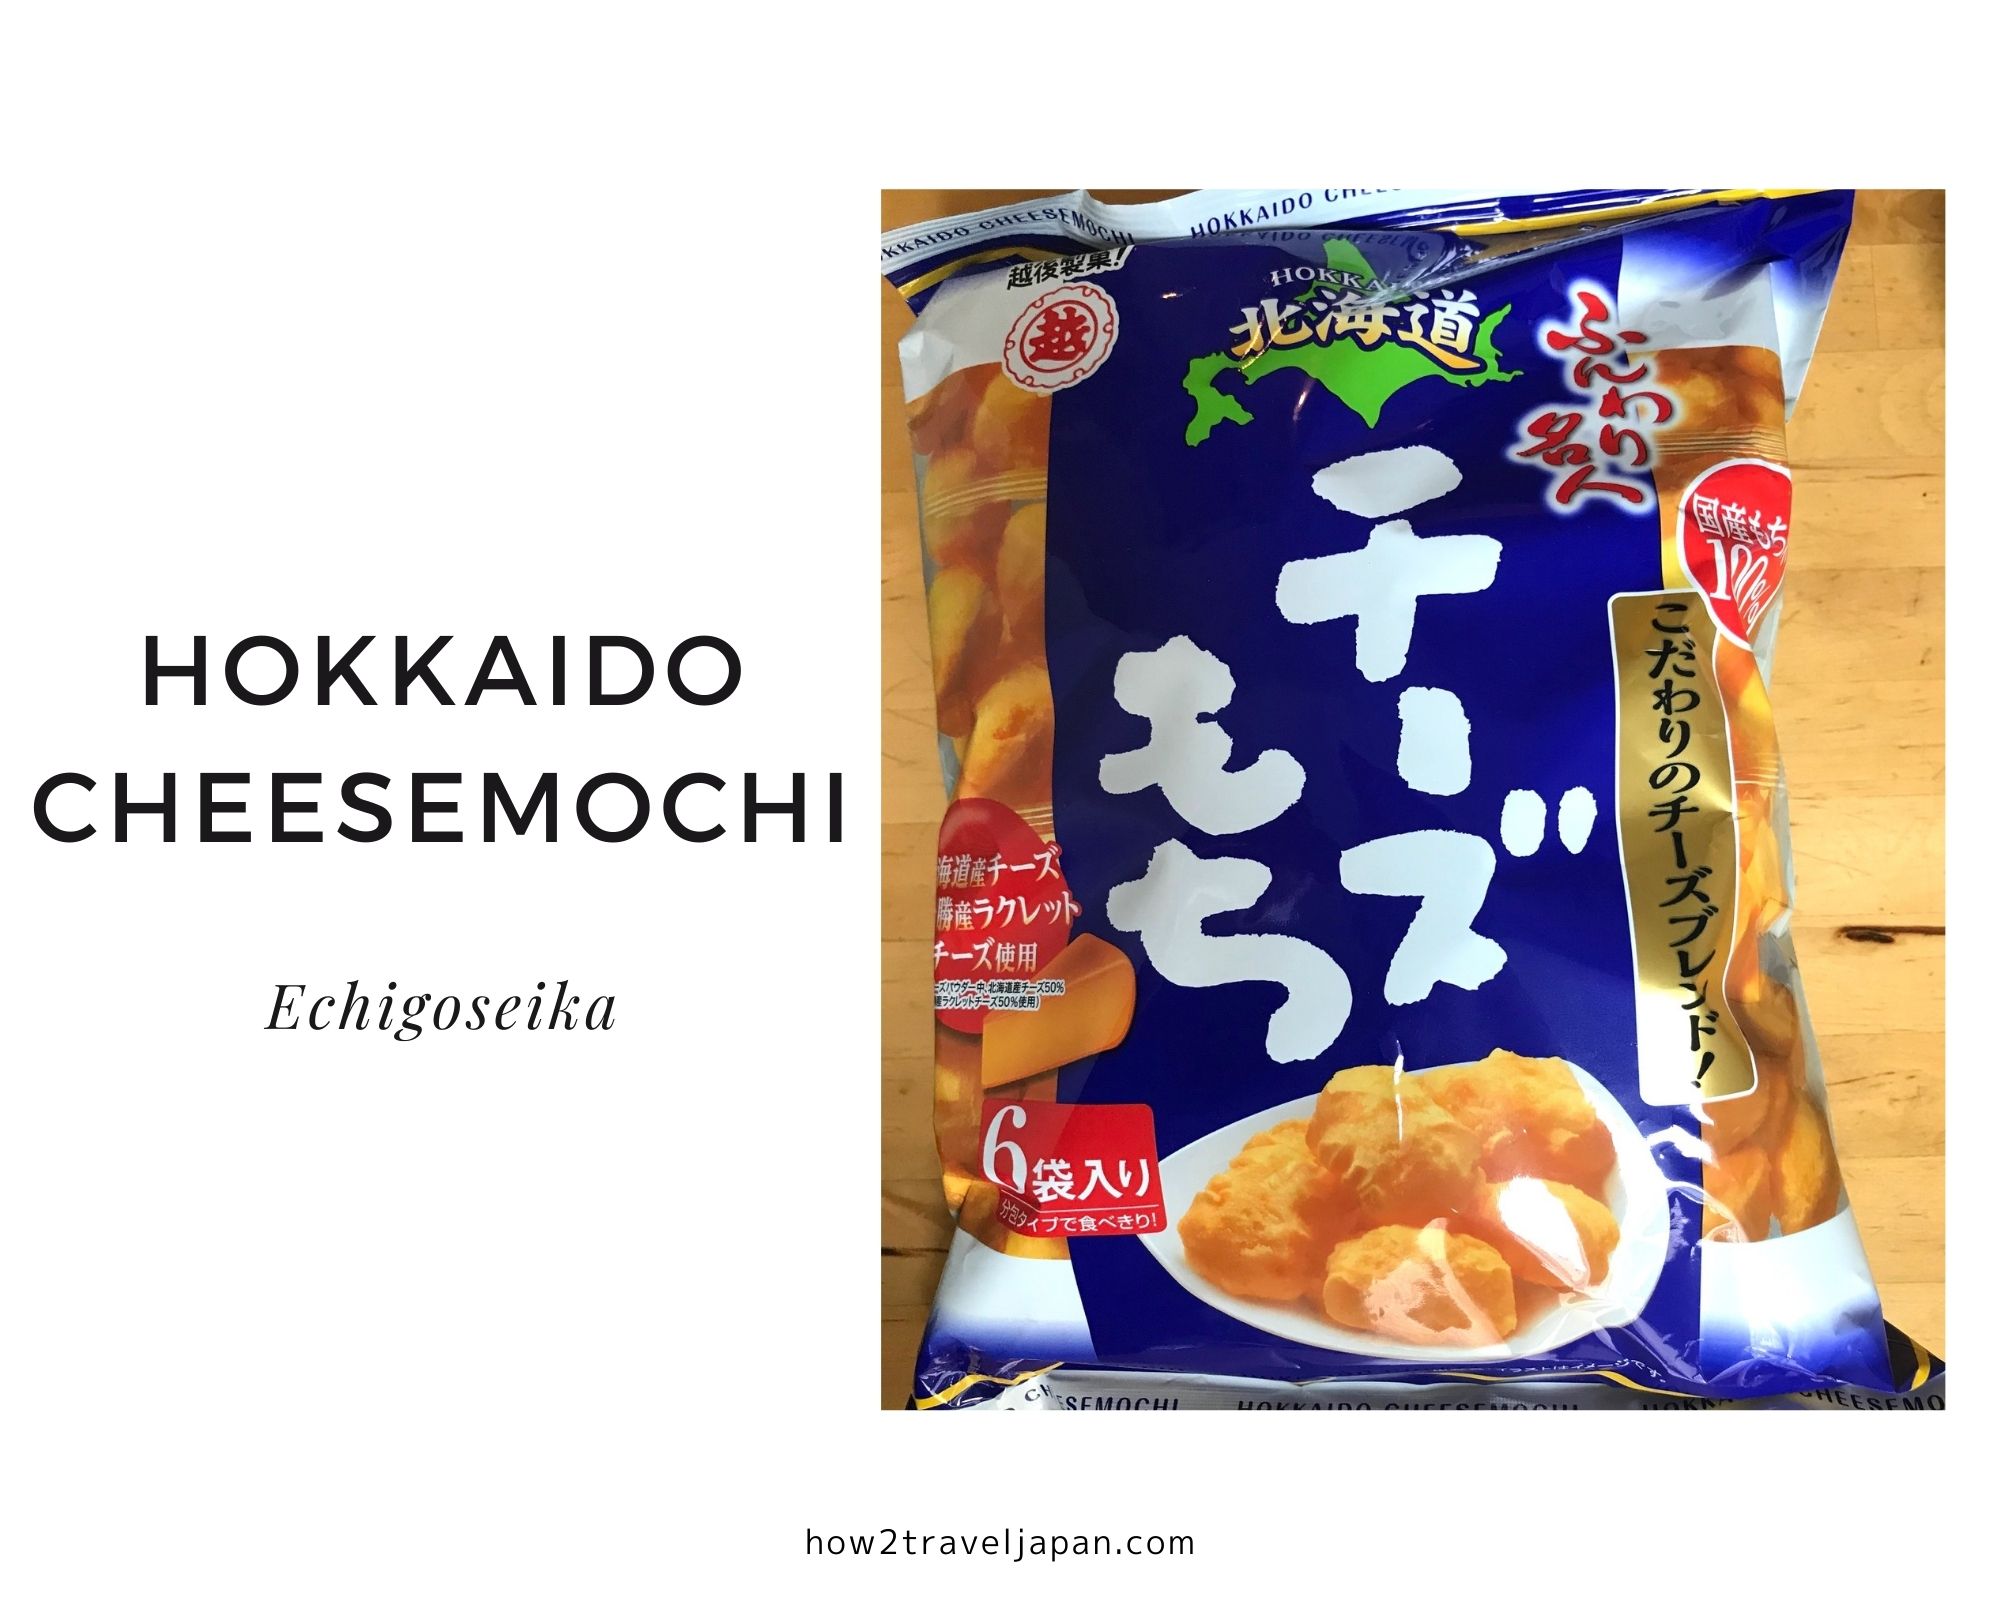 You are currently viewing Hokkaido cheesemochi 【FUNWARI MEIJIN】 from Echigoseika